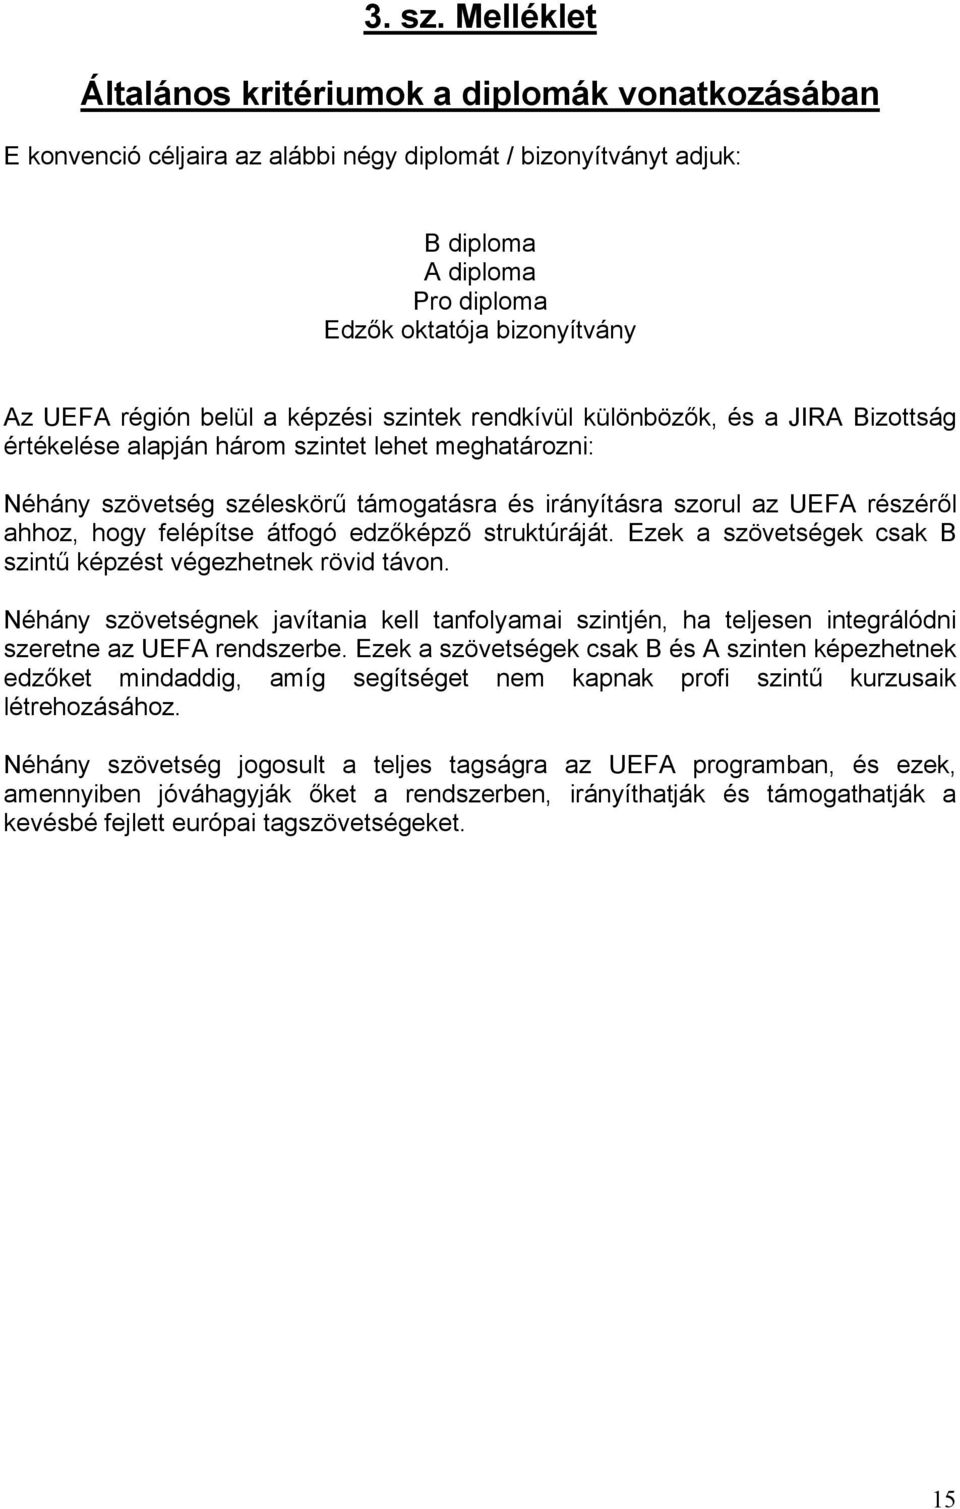 régión belül a képzési szintek rendkívül különbözők, és a JIRA Bizottság értékelése alapján három szintet lehet meghatározni: Néhány szövetség széleskörű támogatásra és irányításra szorul az UEFA